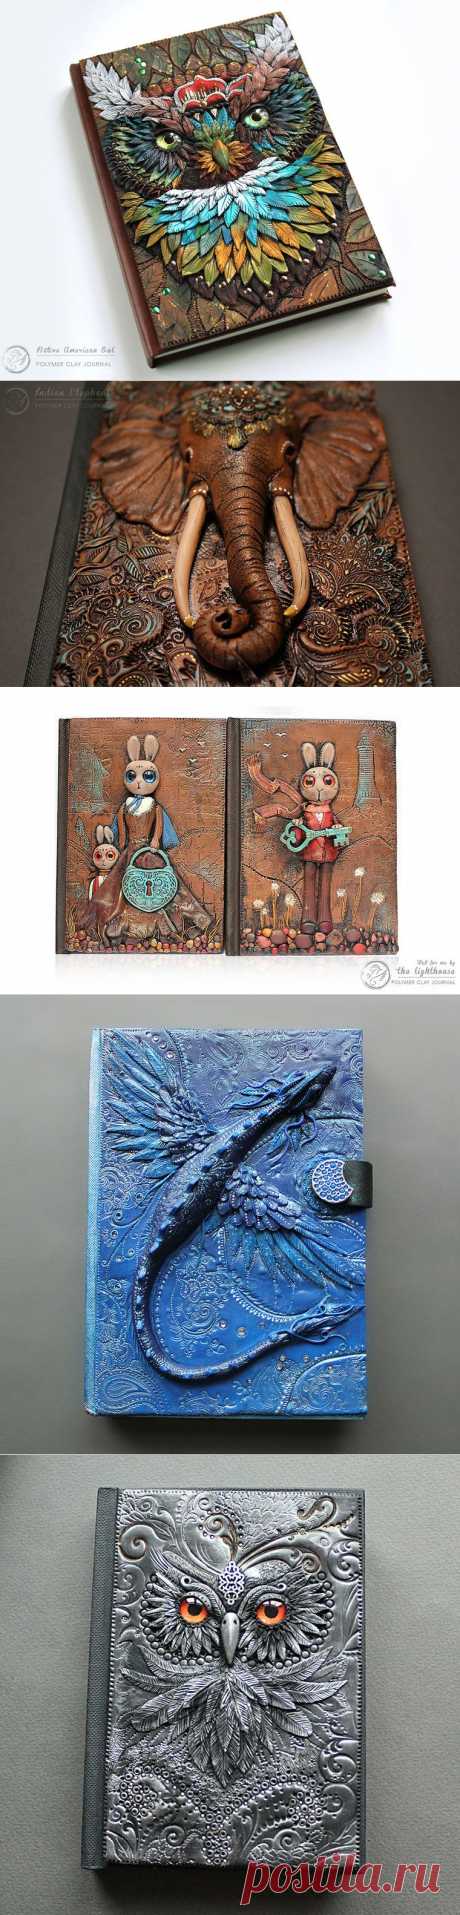 Сказочные обложки из полимерной глины дизайнера Aniko Kolesnikova - Ярмарка Мастеров - ручная работа, handmade